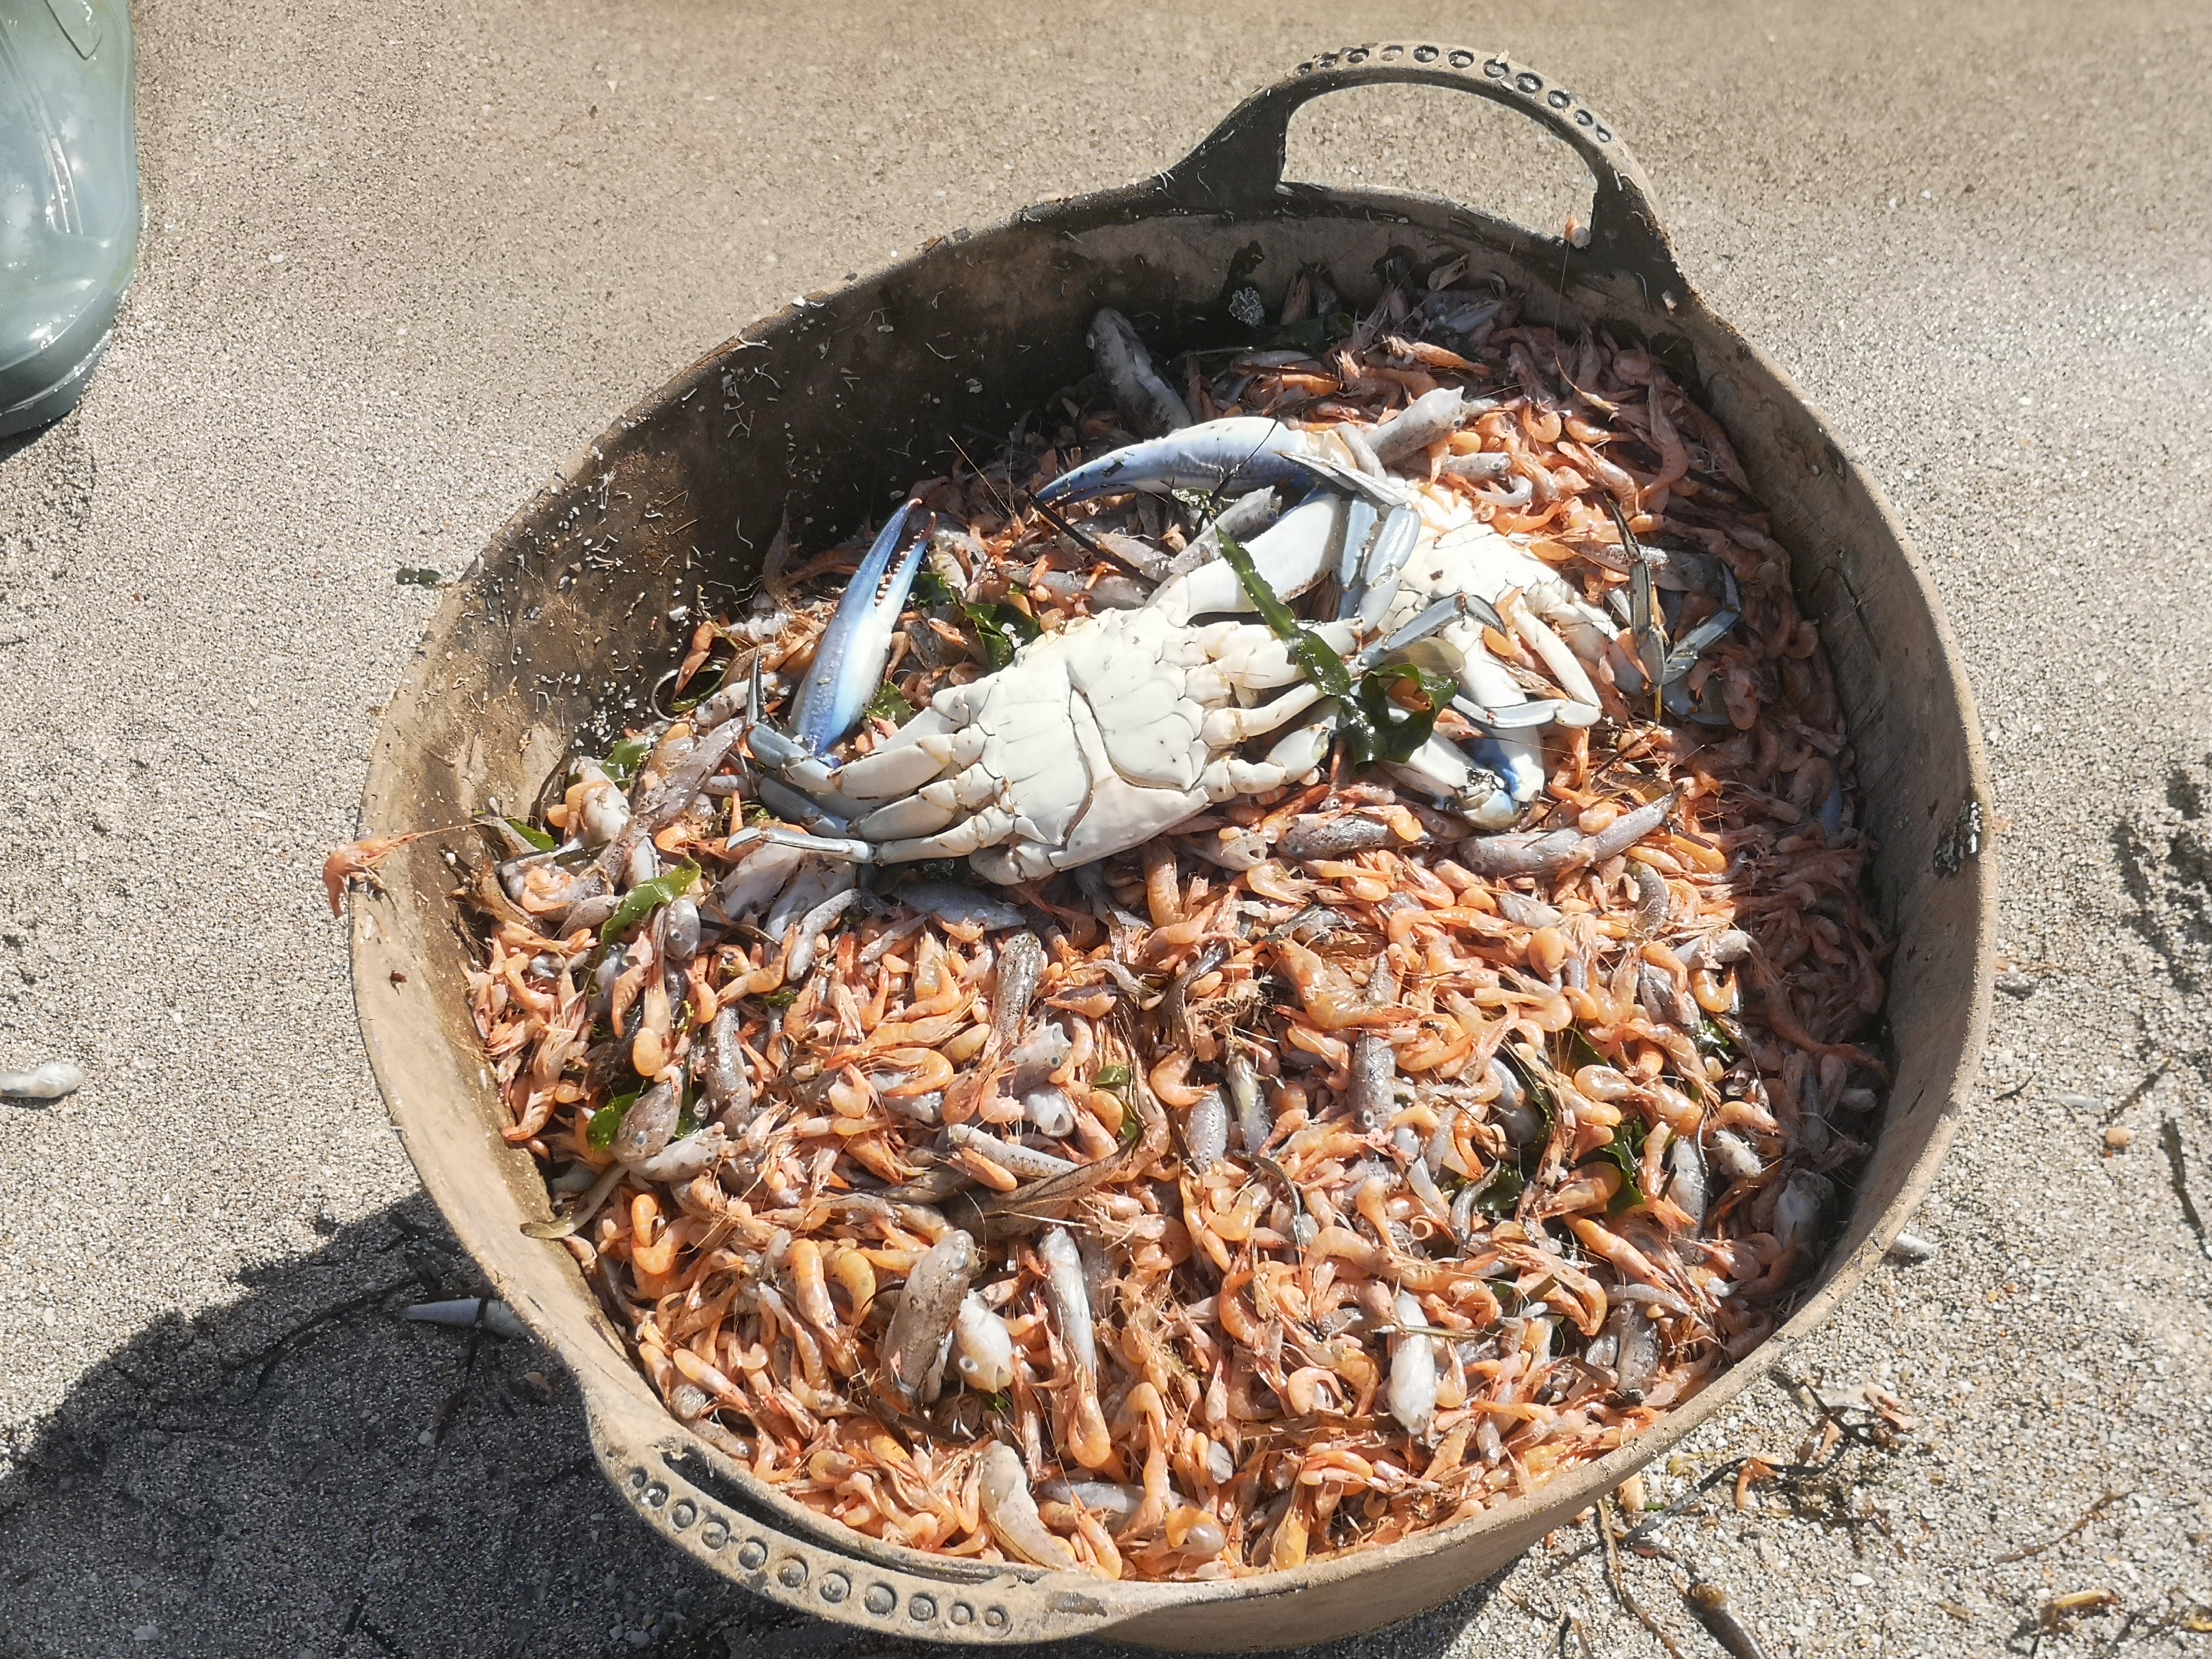 Un cesto con peces, langostinos y el resistente cangrejo azul, muertos por las condiciones de la laguna regional. Imagen: EEA